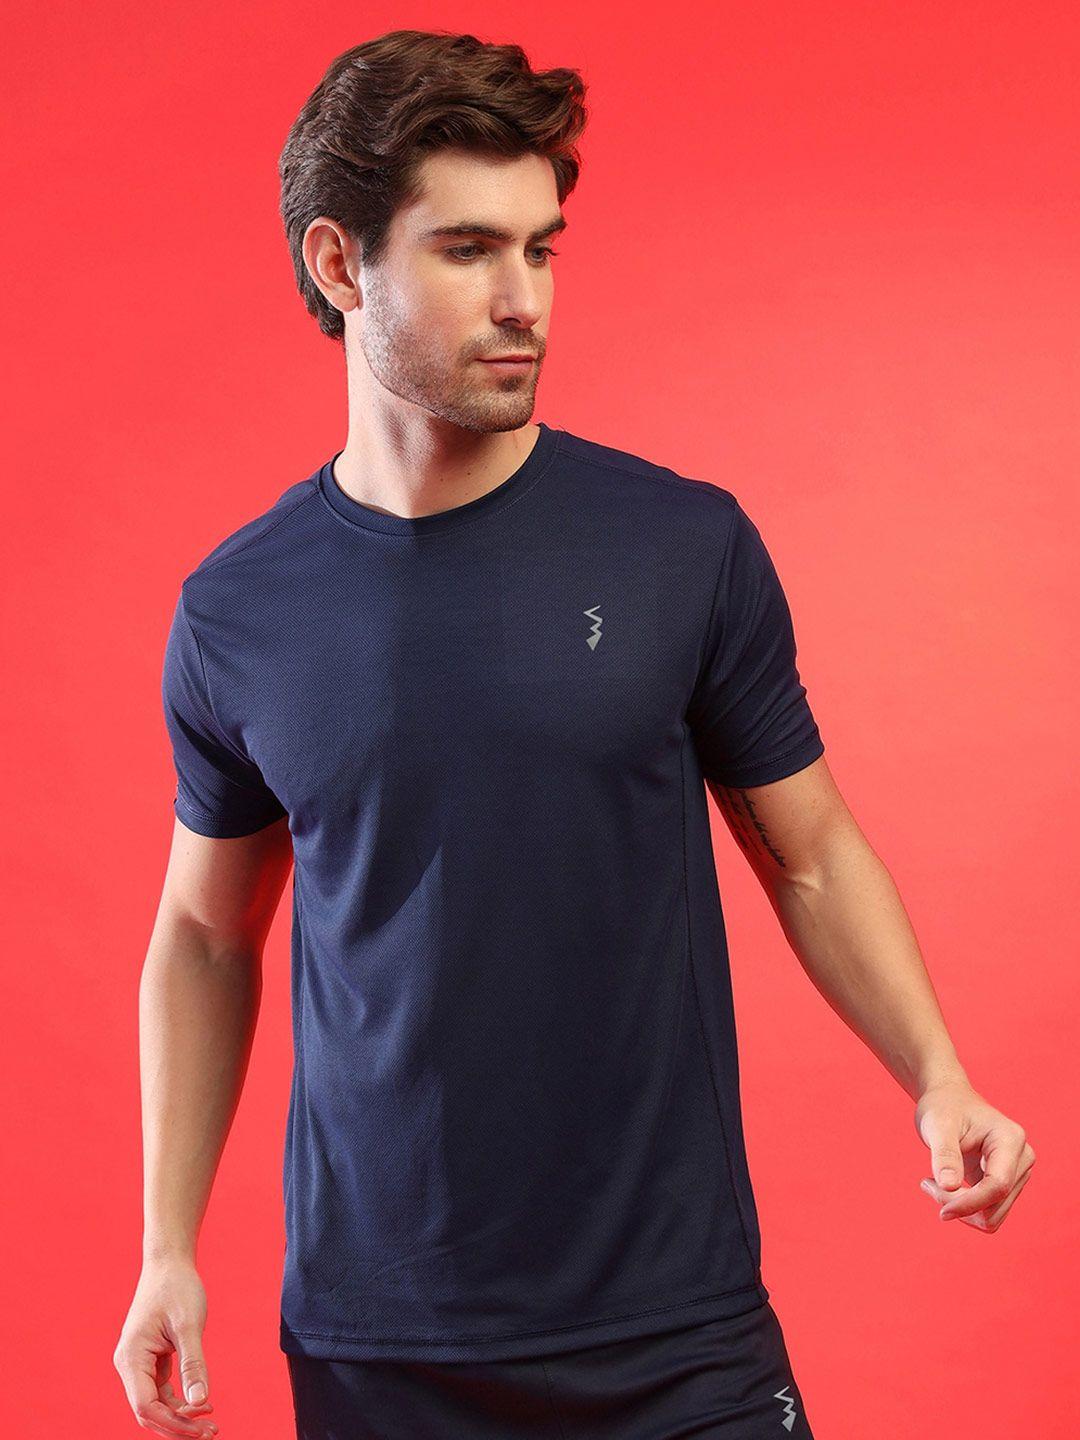 campus-sutra-men-navy-blue-v-neck-dri-fit-applique-running-t-shirt